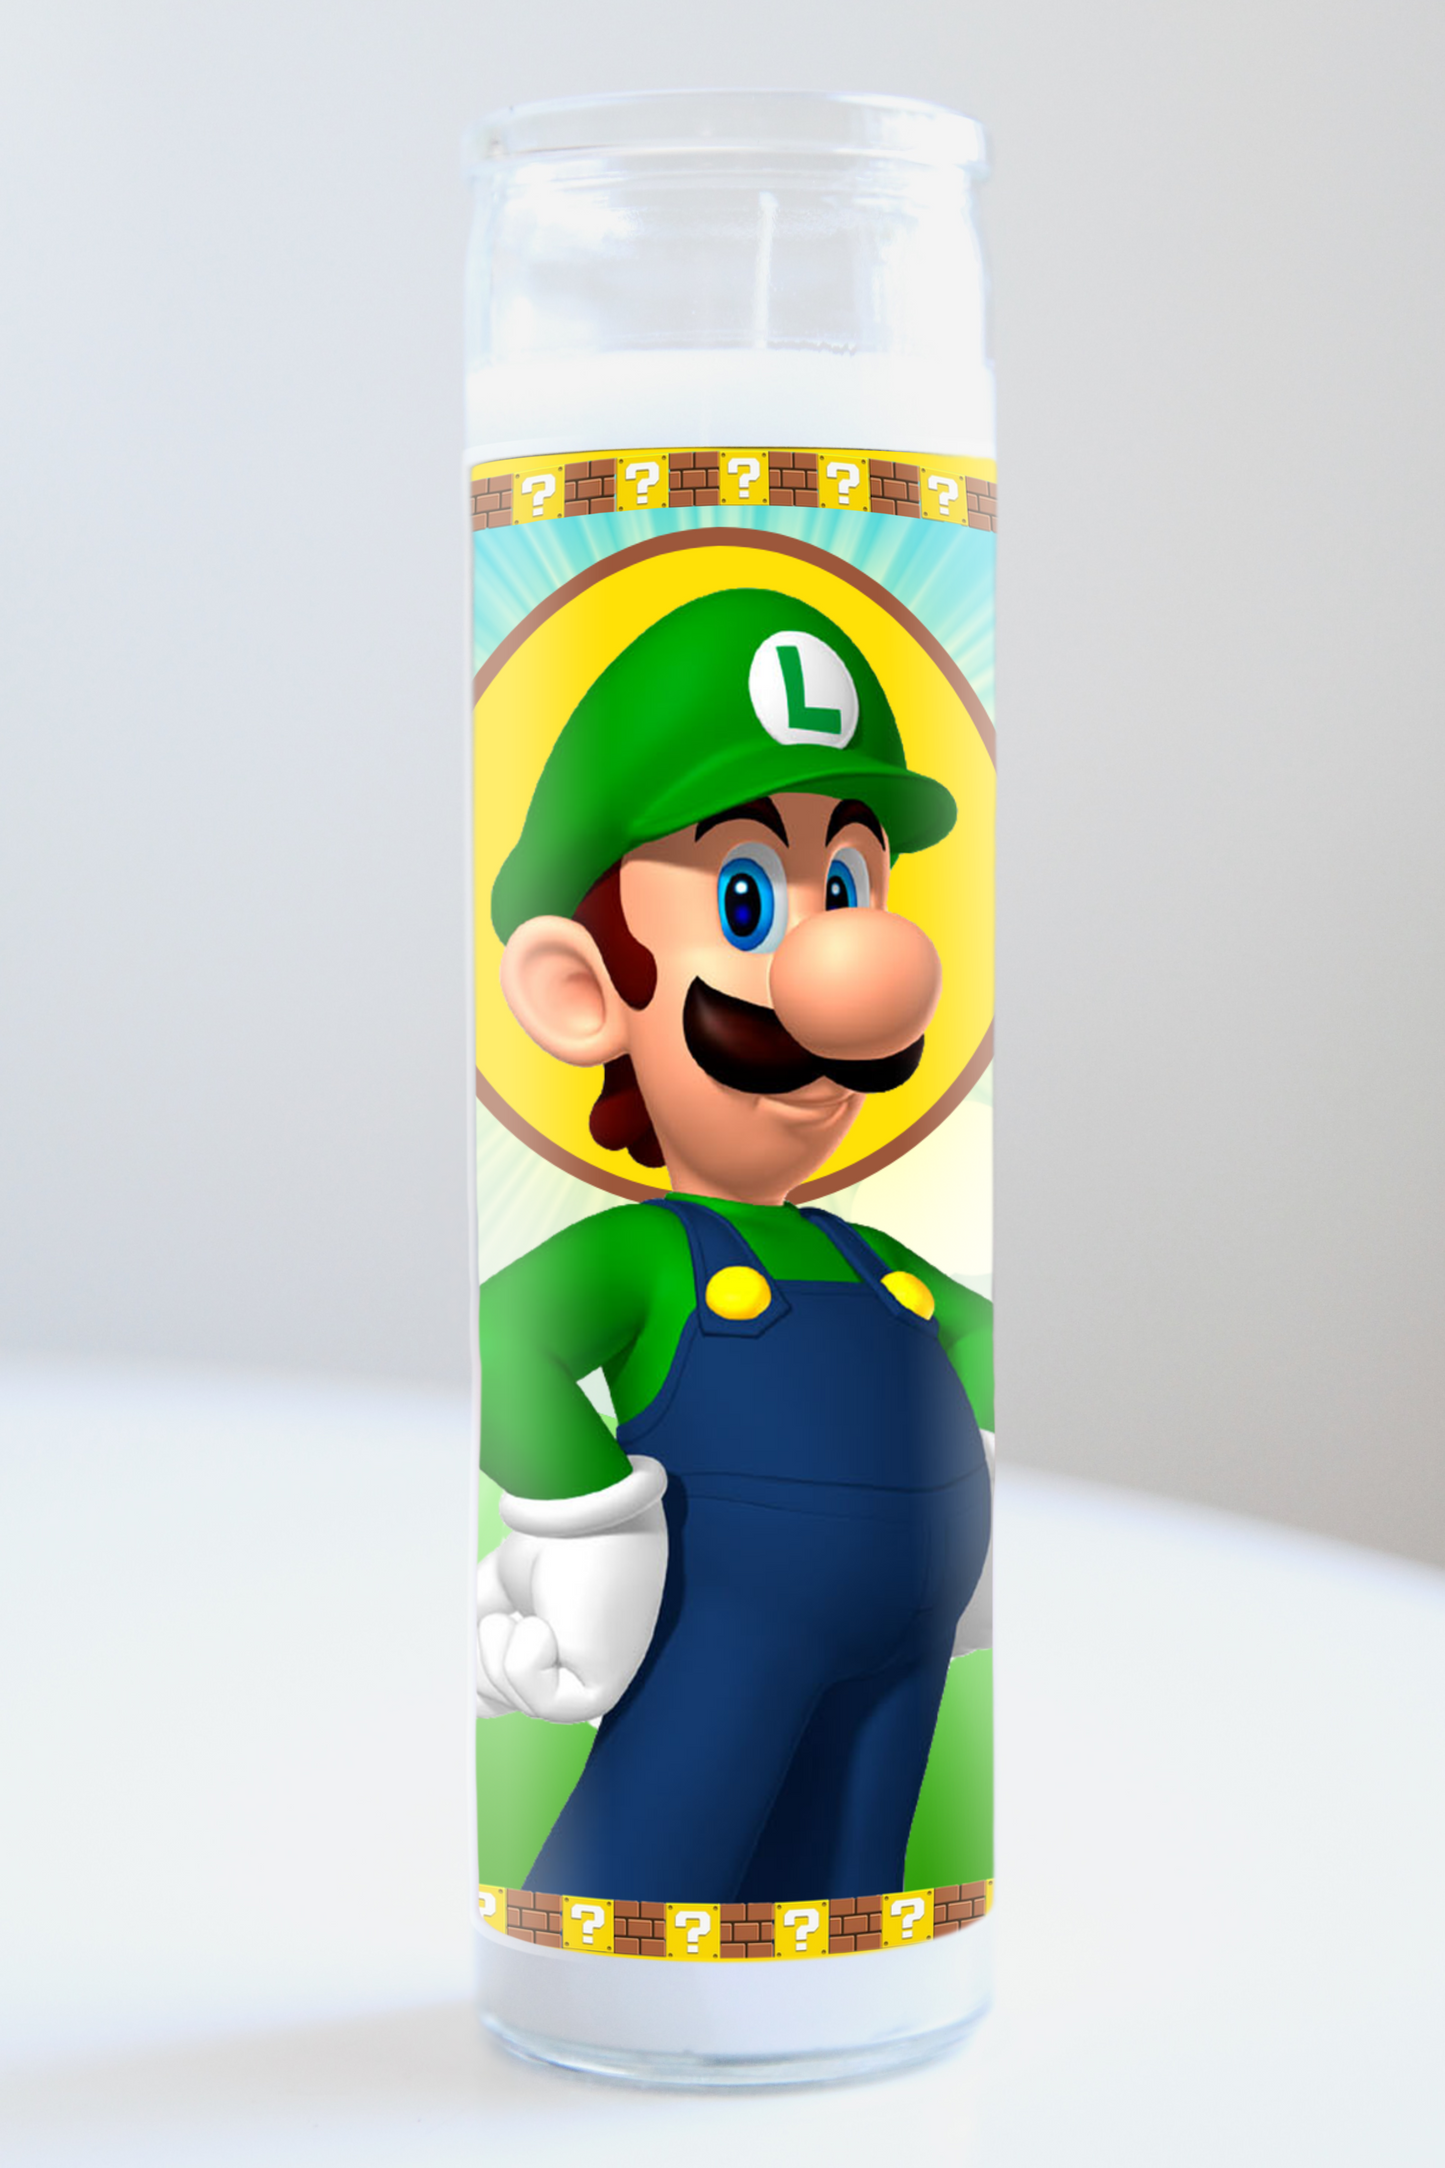 Luigi (Super Mario Bros.)